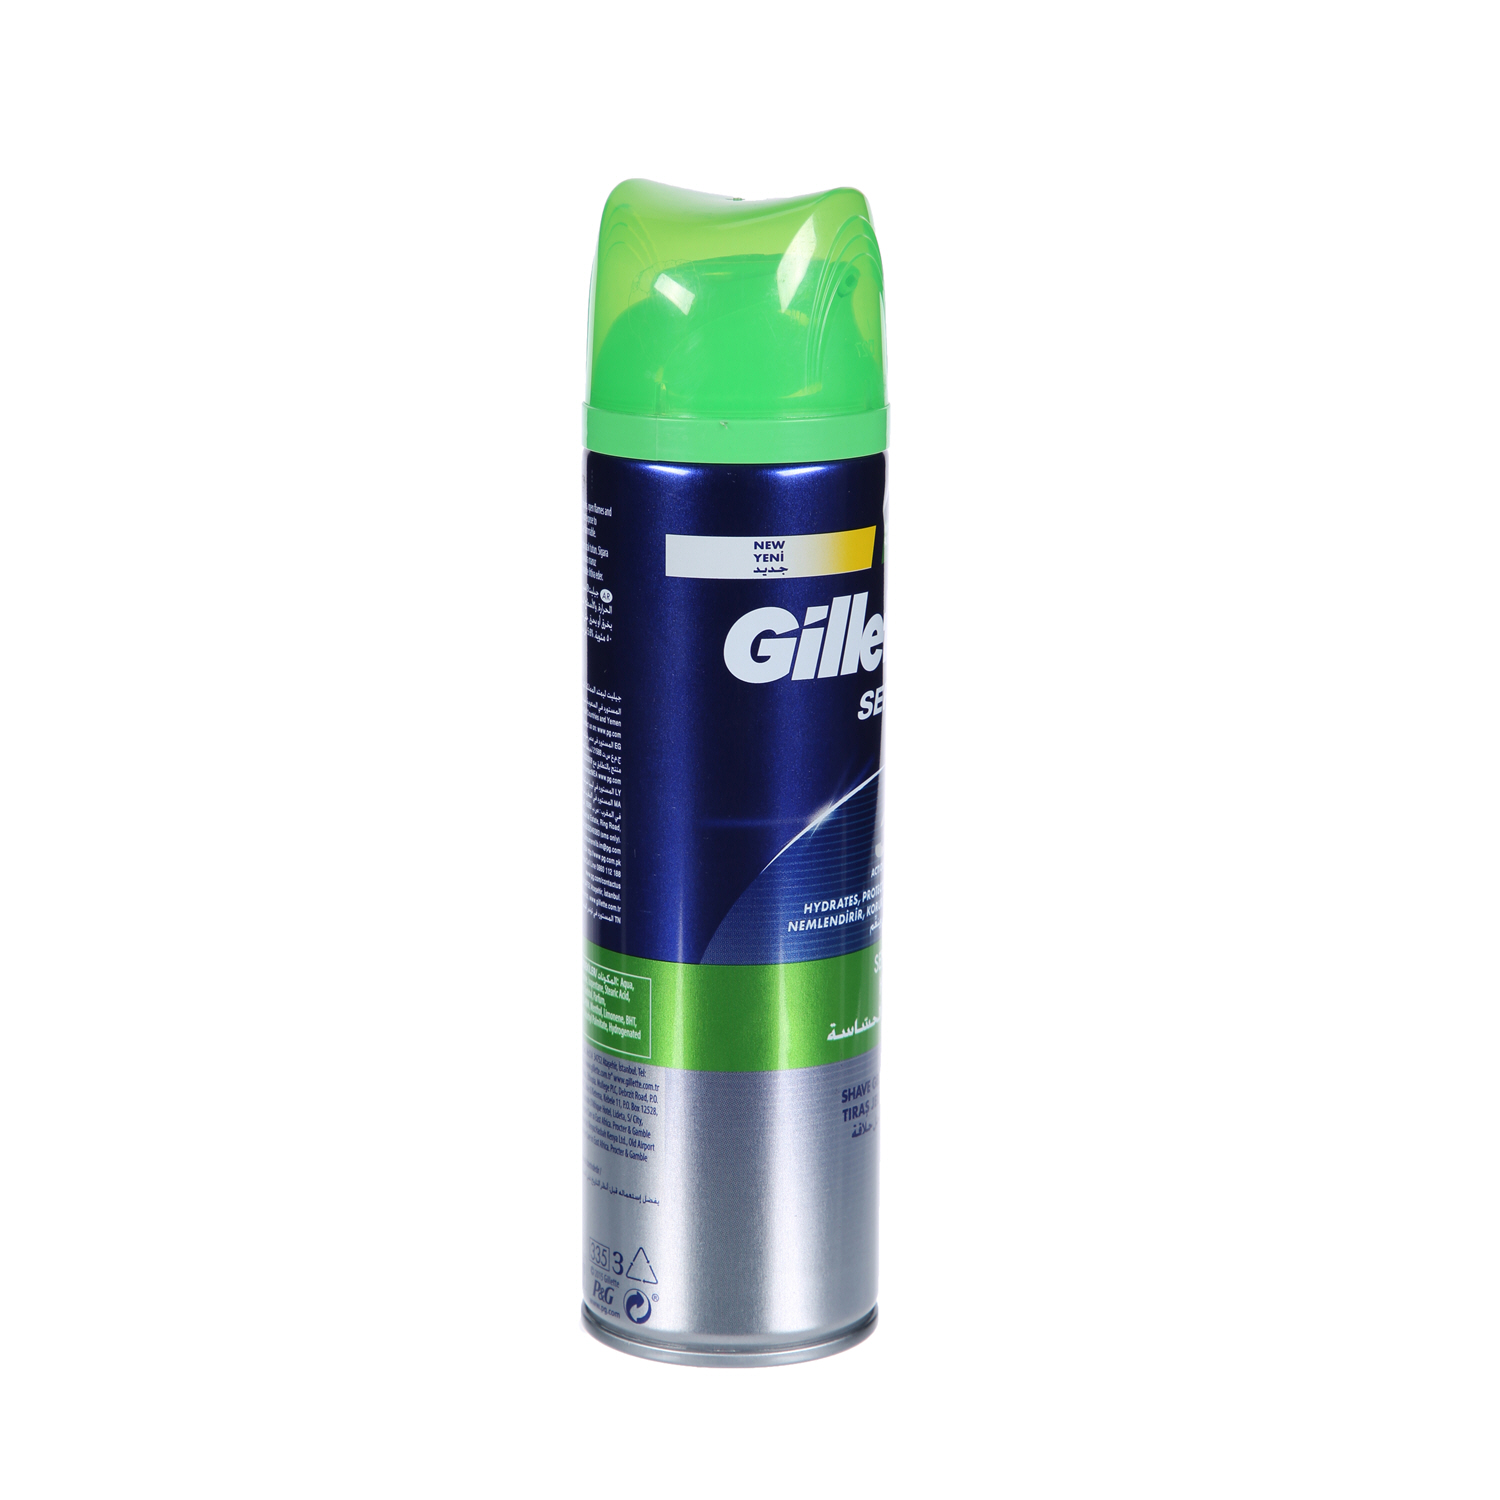 Gillette Sensitive Shave Gel 200ml